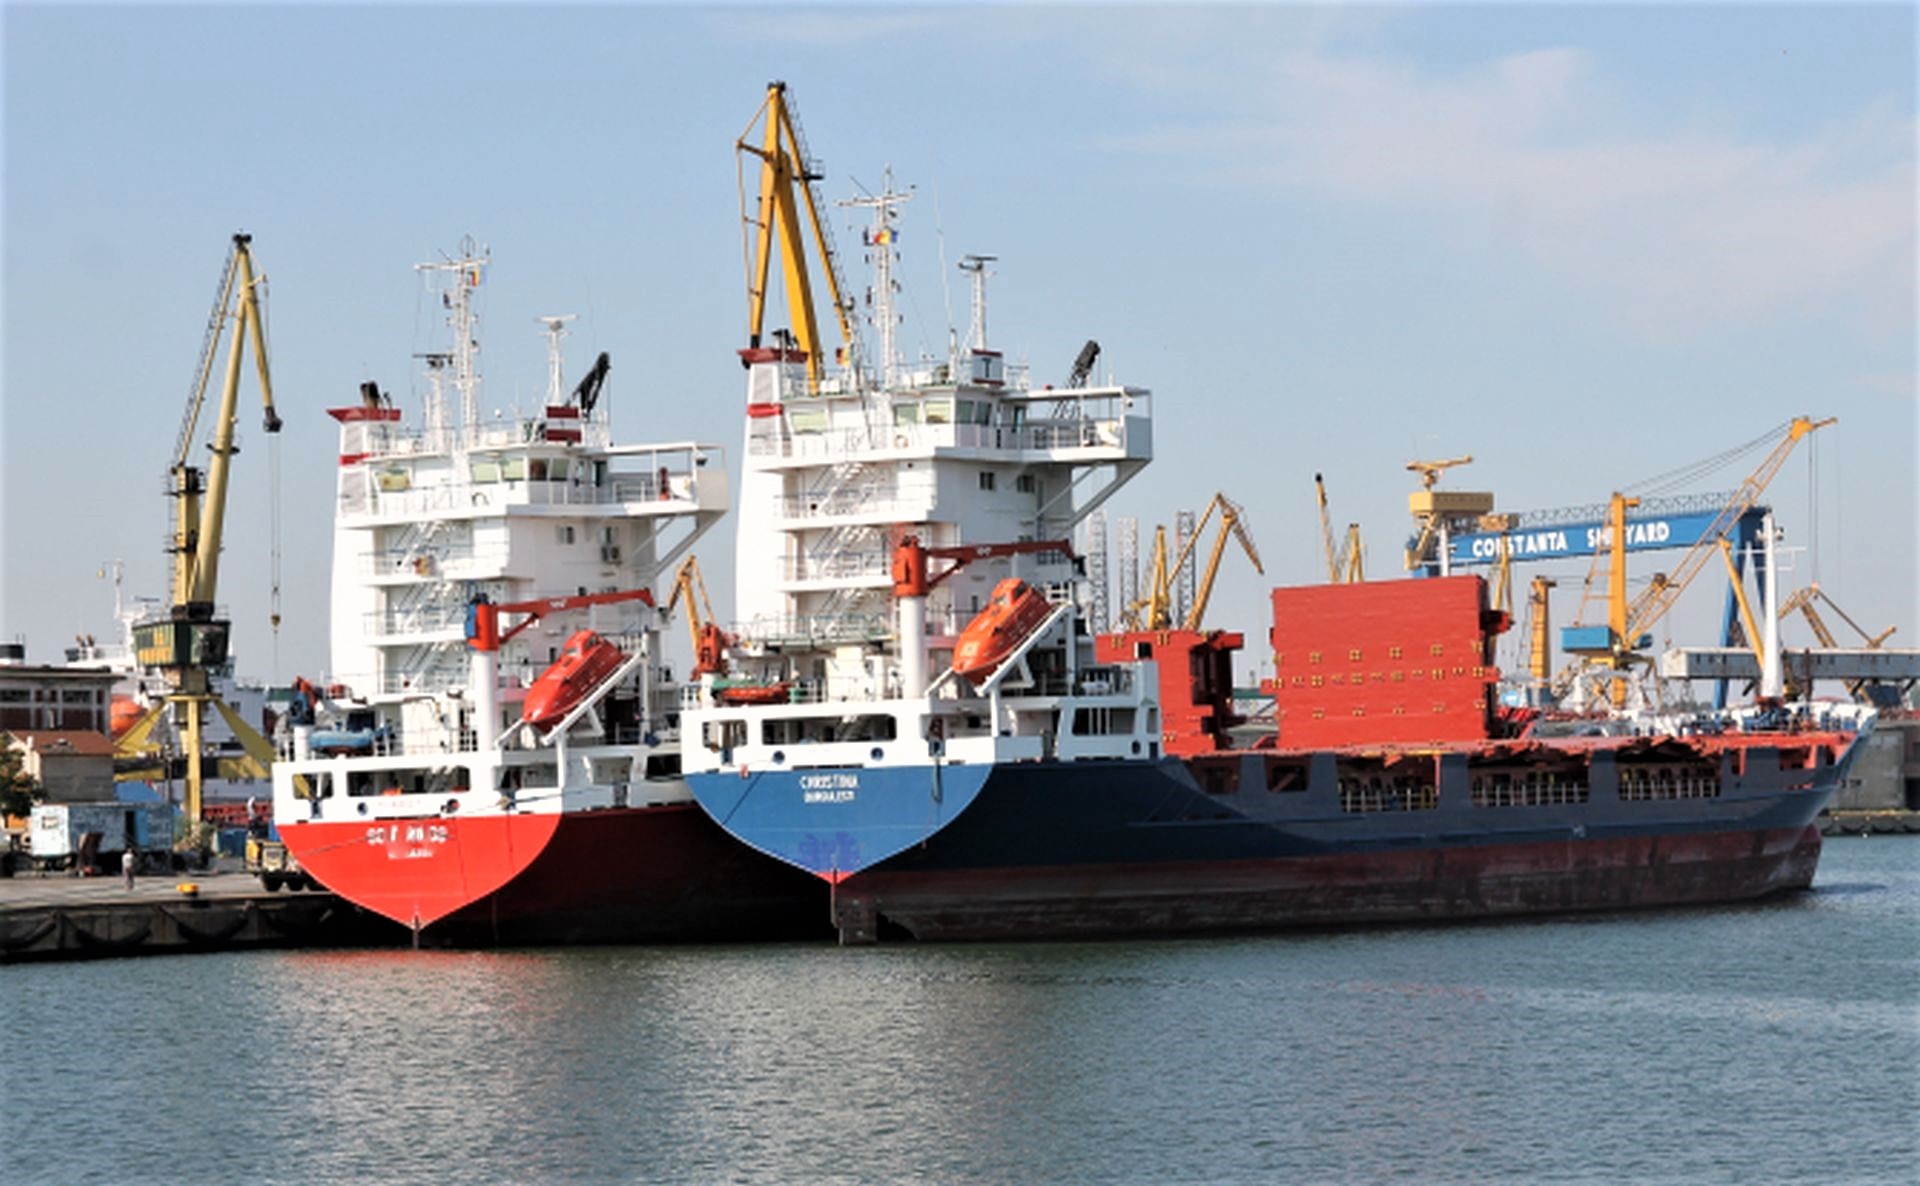 Vântul puternic suspendă manevrele în porturile de la Marea Neagră. S-au luat și alte măsuri